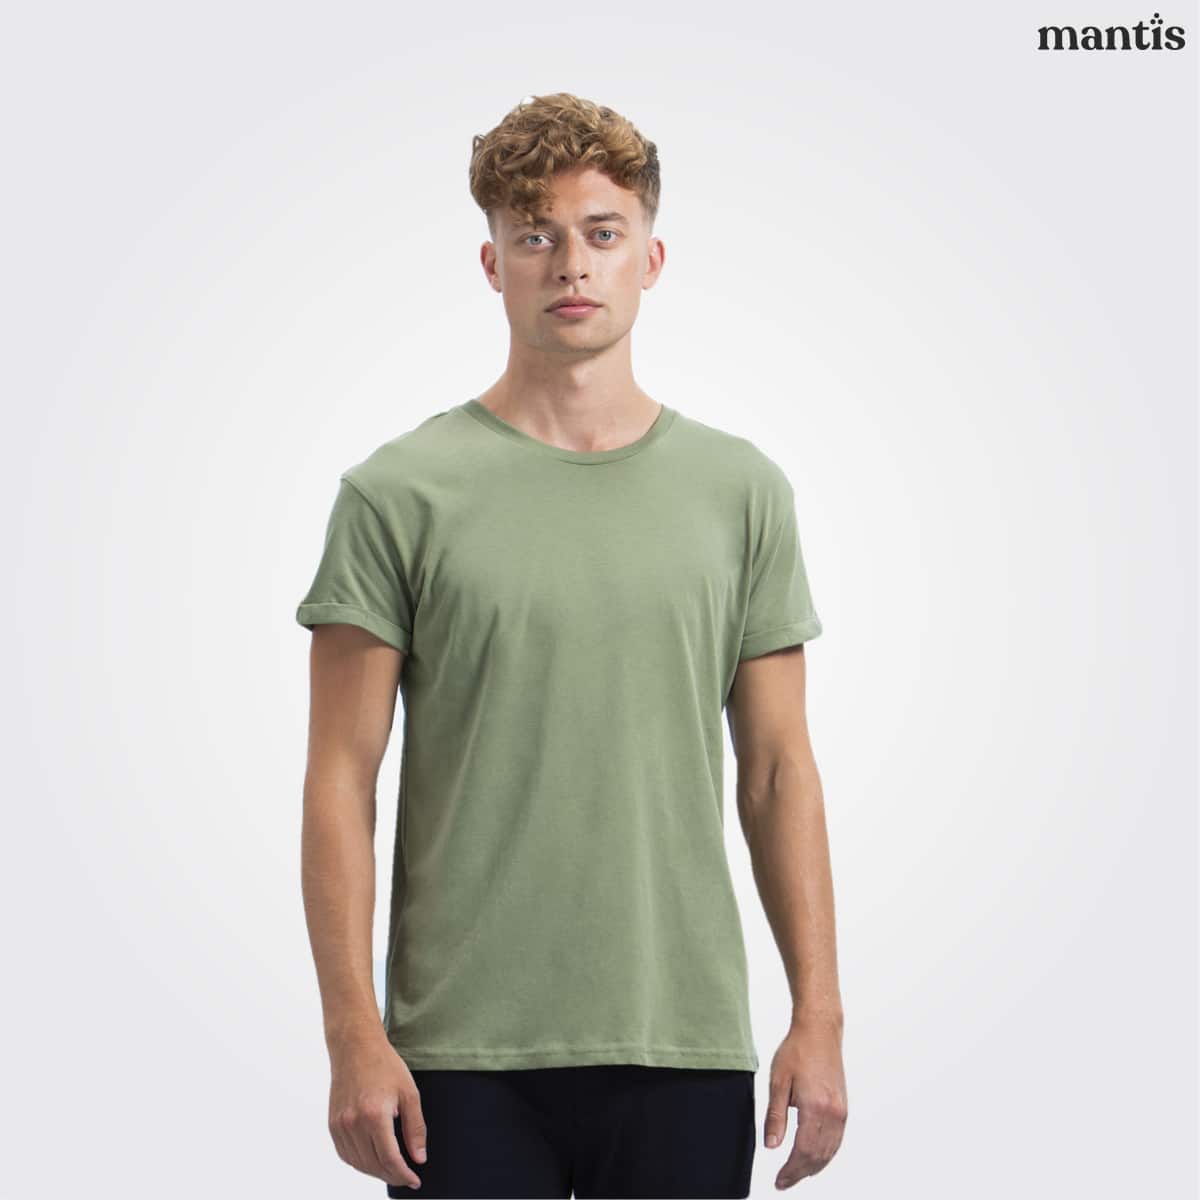 En T-shirt i grönt för modern look